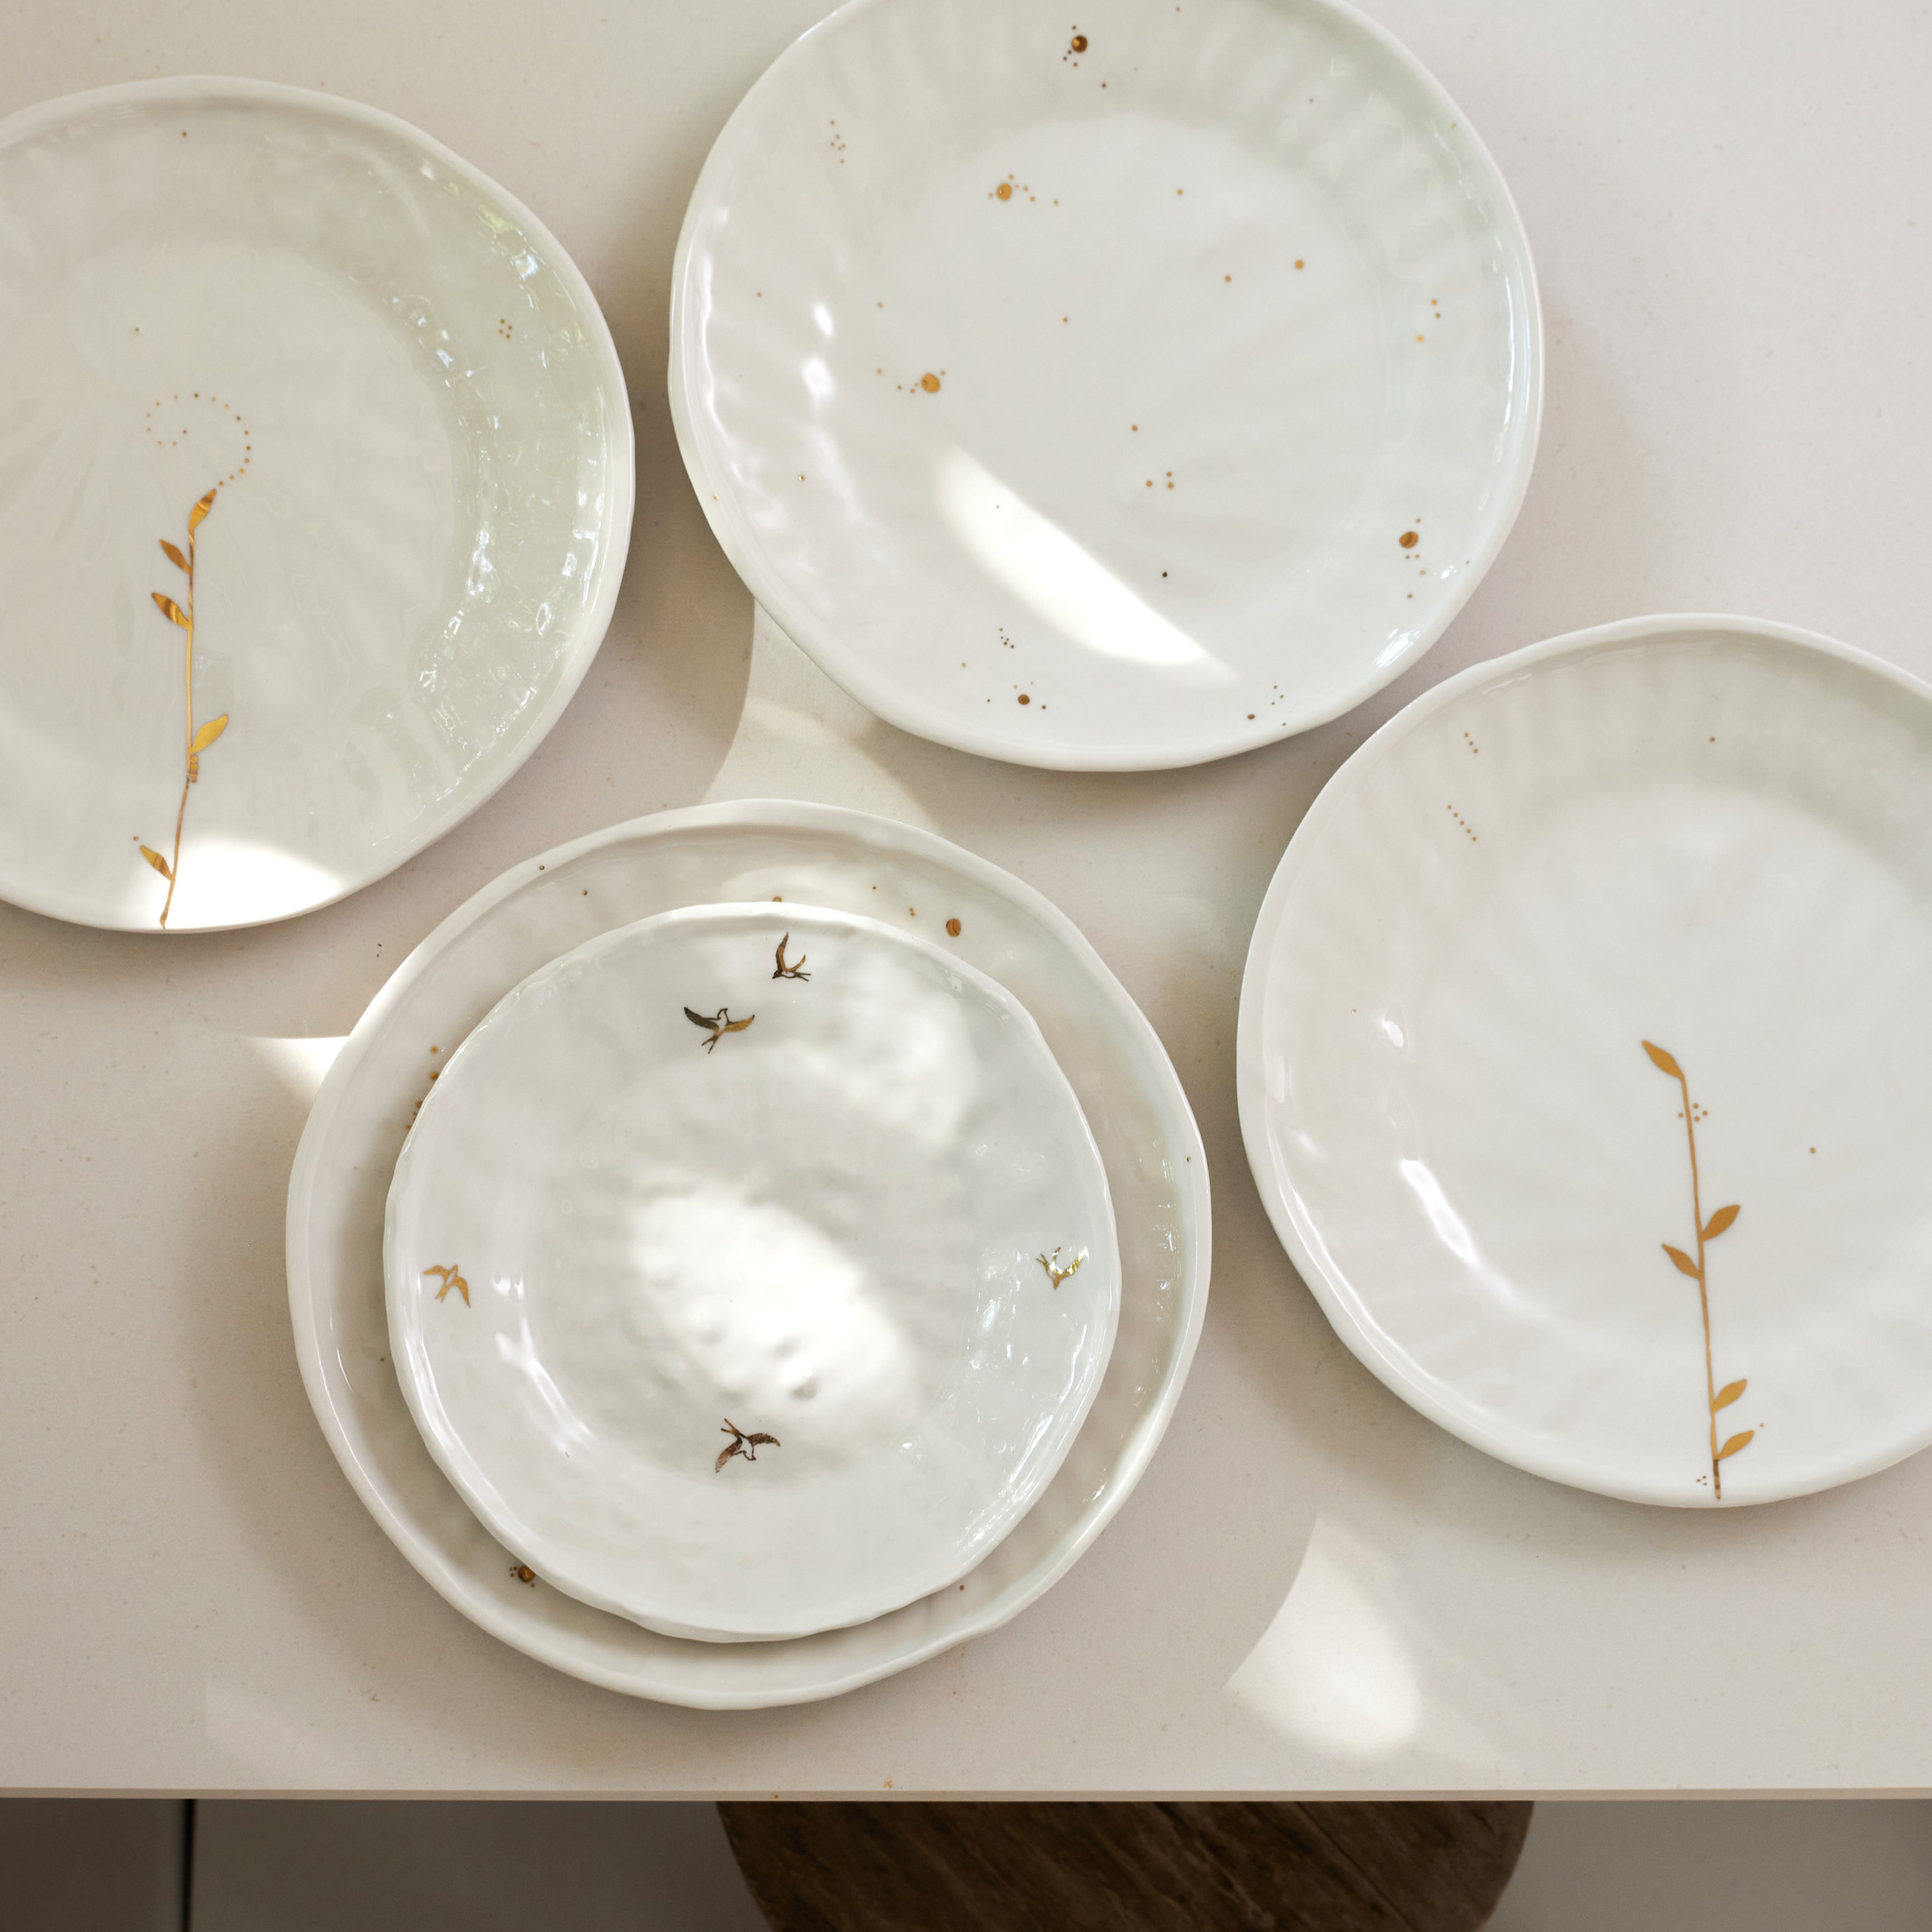 THE HOME DECO FACTORY - Assiette en porcelaine avec liseré doré assiette  plate - 20 cm